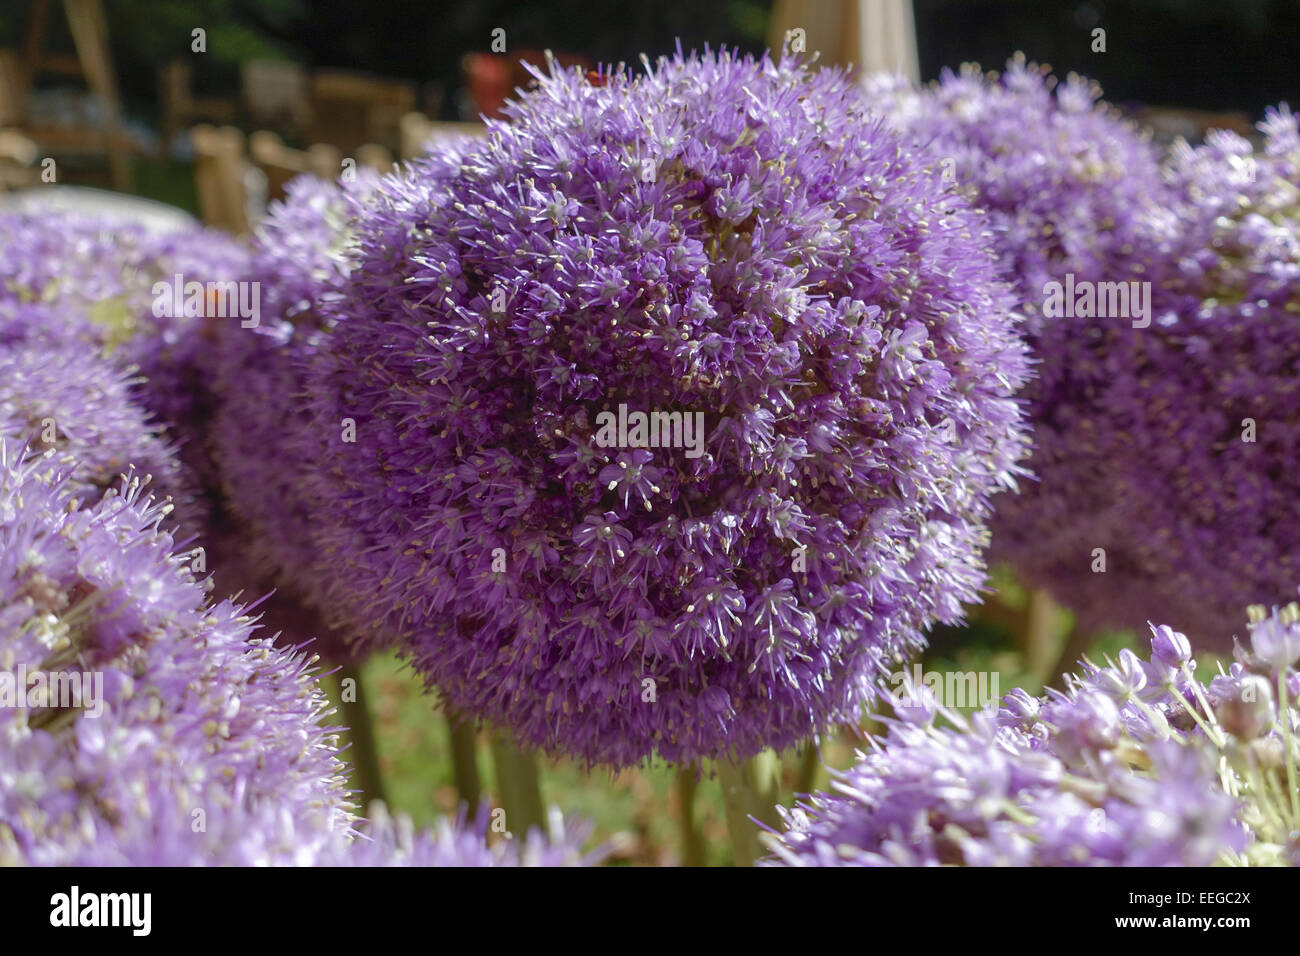 Blühende Zierzwiebel (Allium nigrum), Flower of a decorative onion Allium nigrum, allium, nigrum, bloom, blooming, blossom, blos Stock Photo